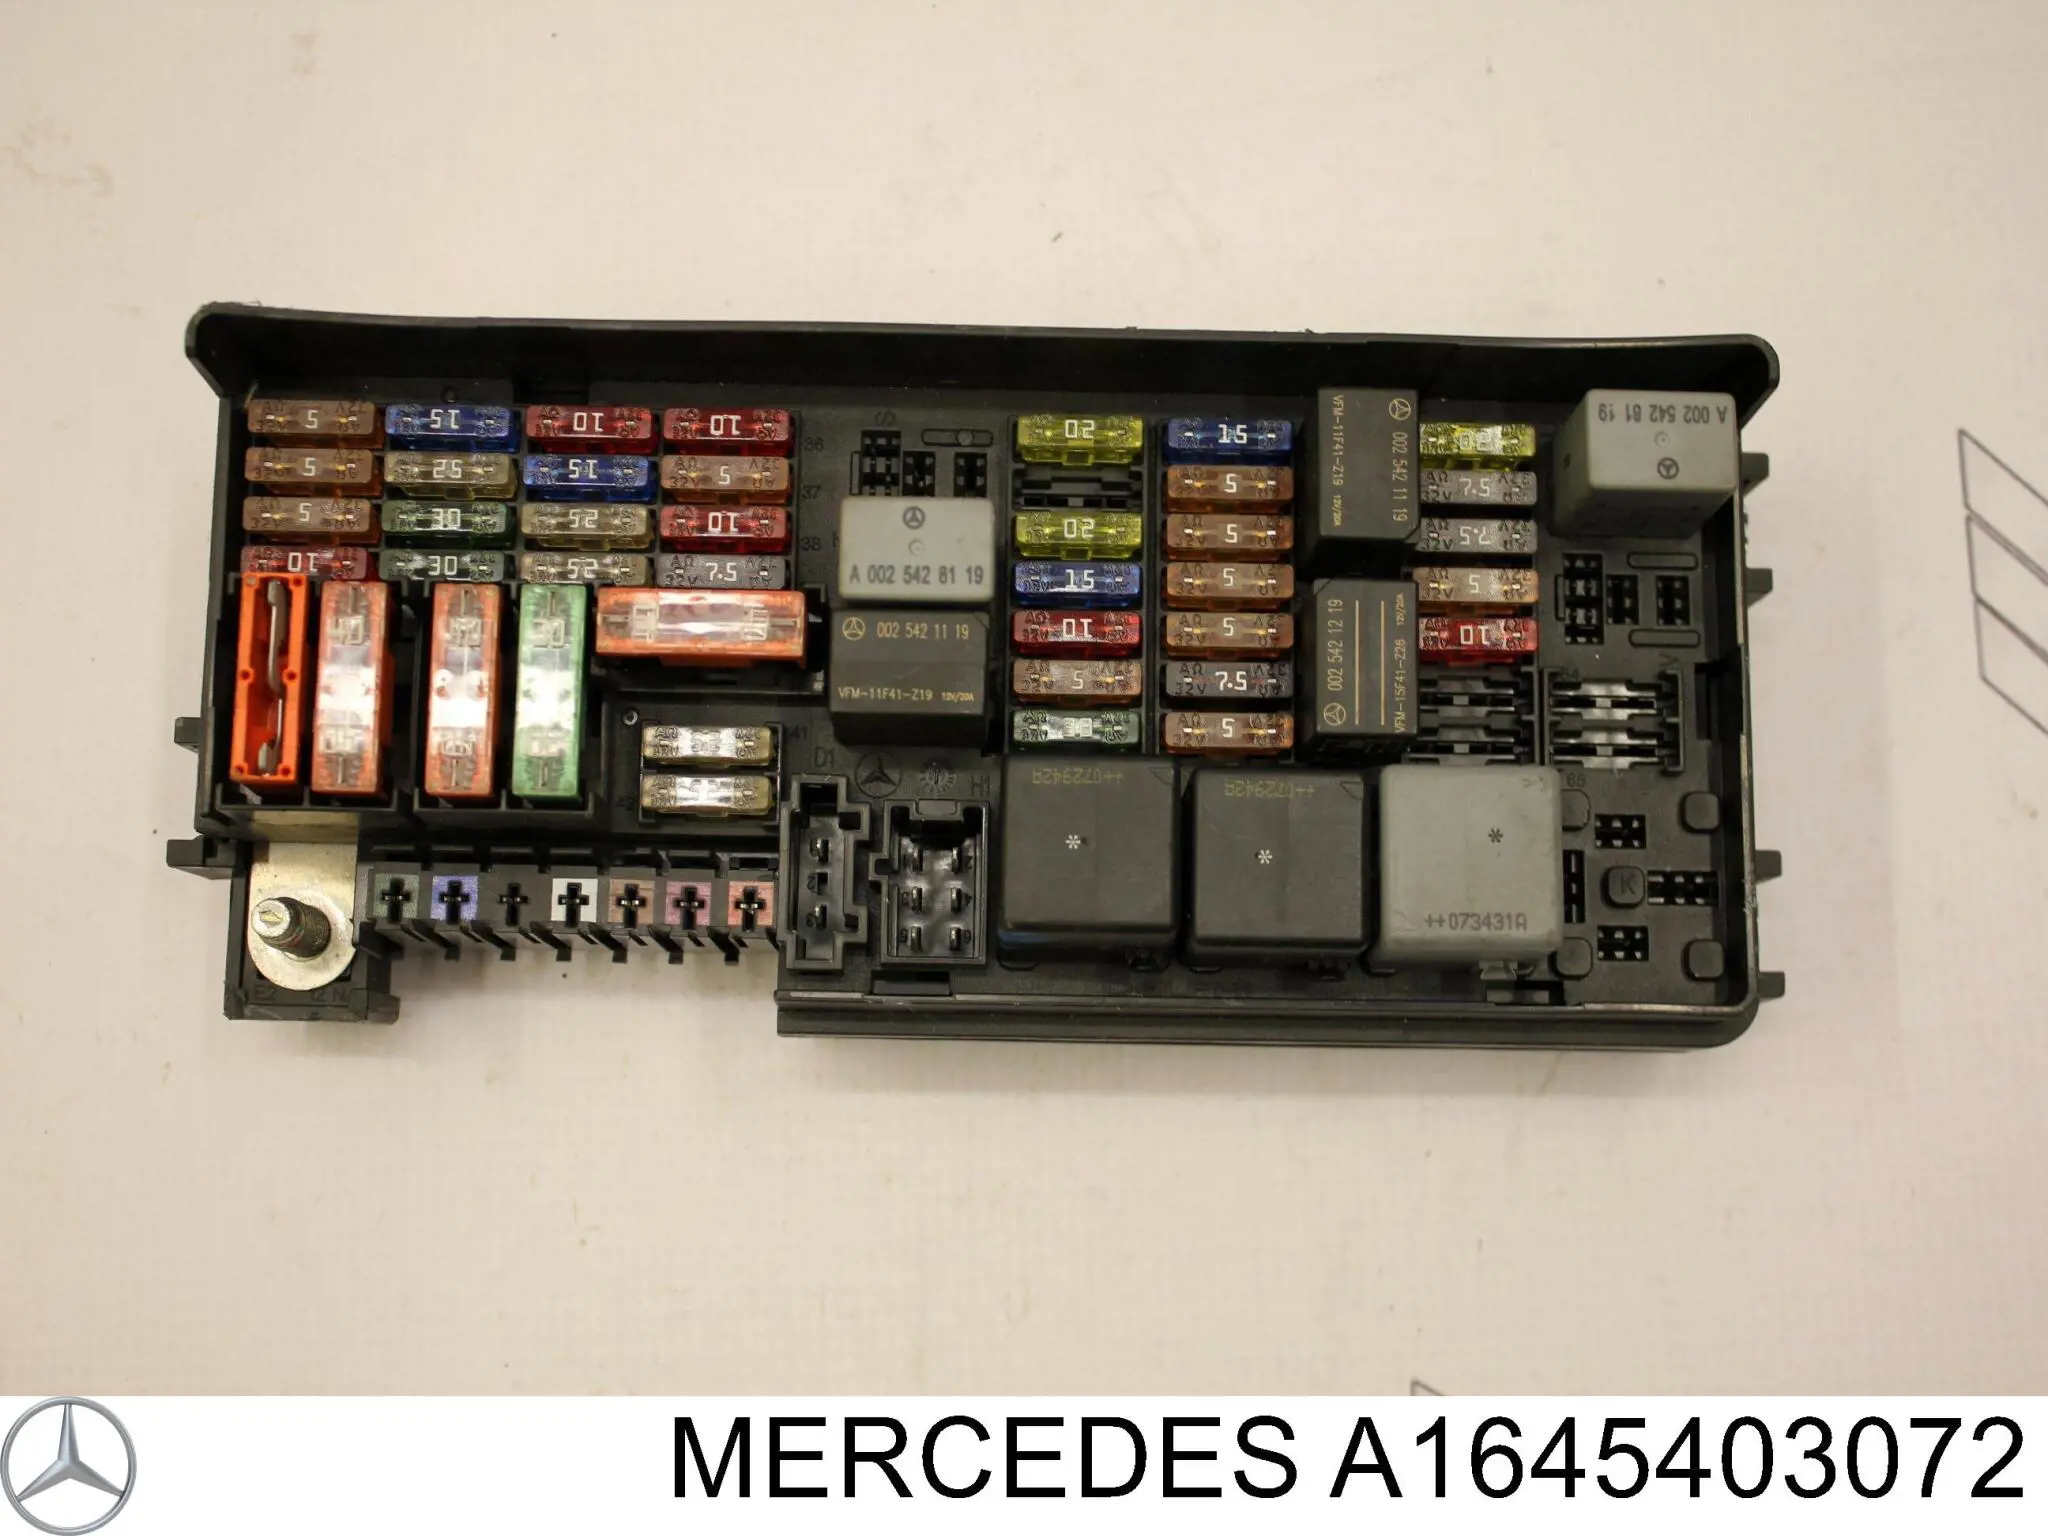 A1645403072 Mercedes caja de fusibles, trasera interior